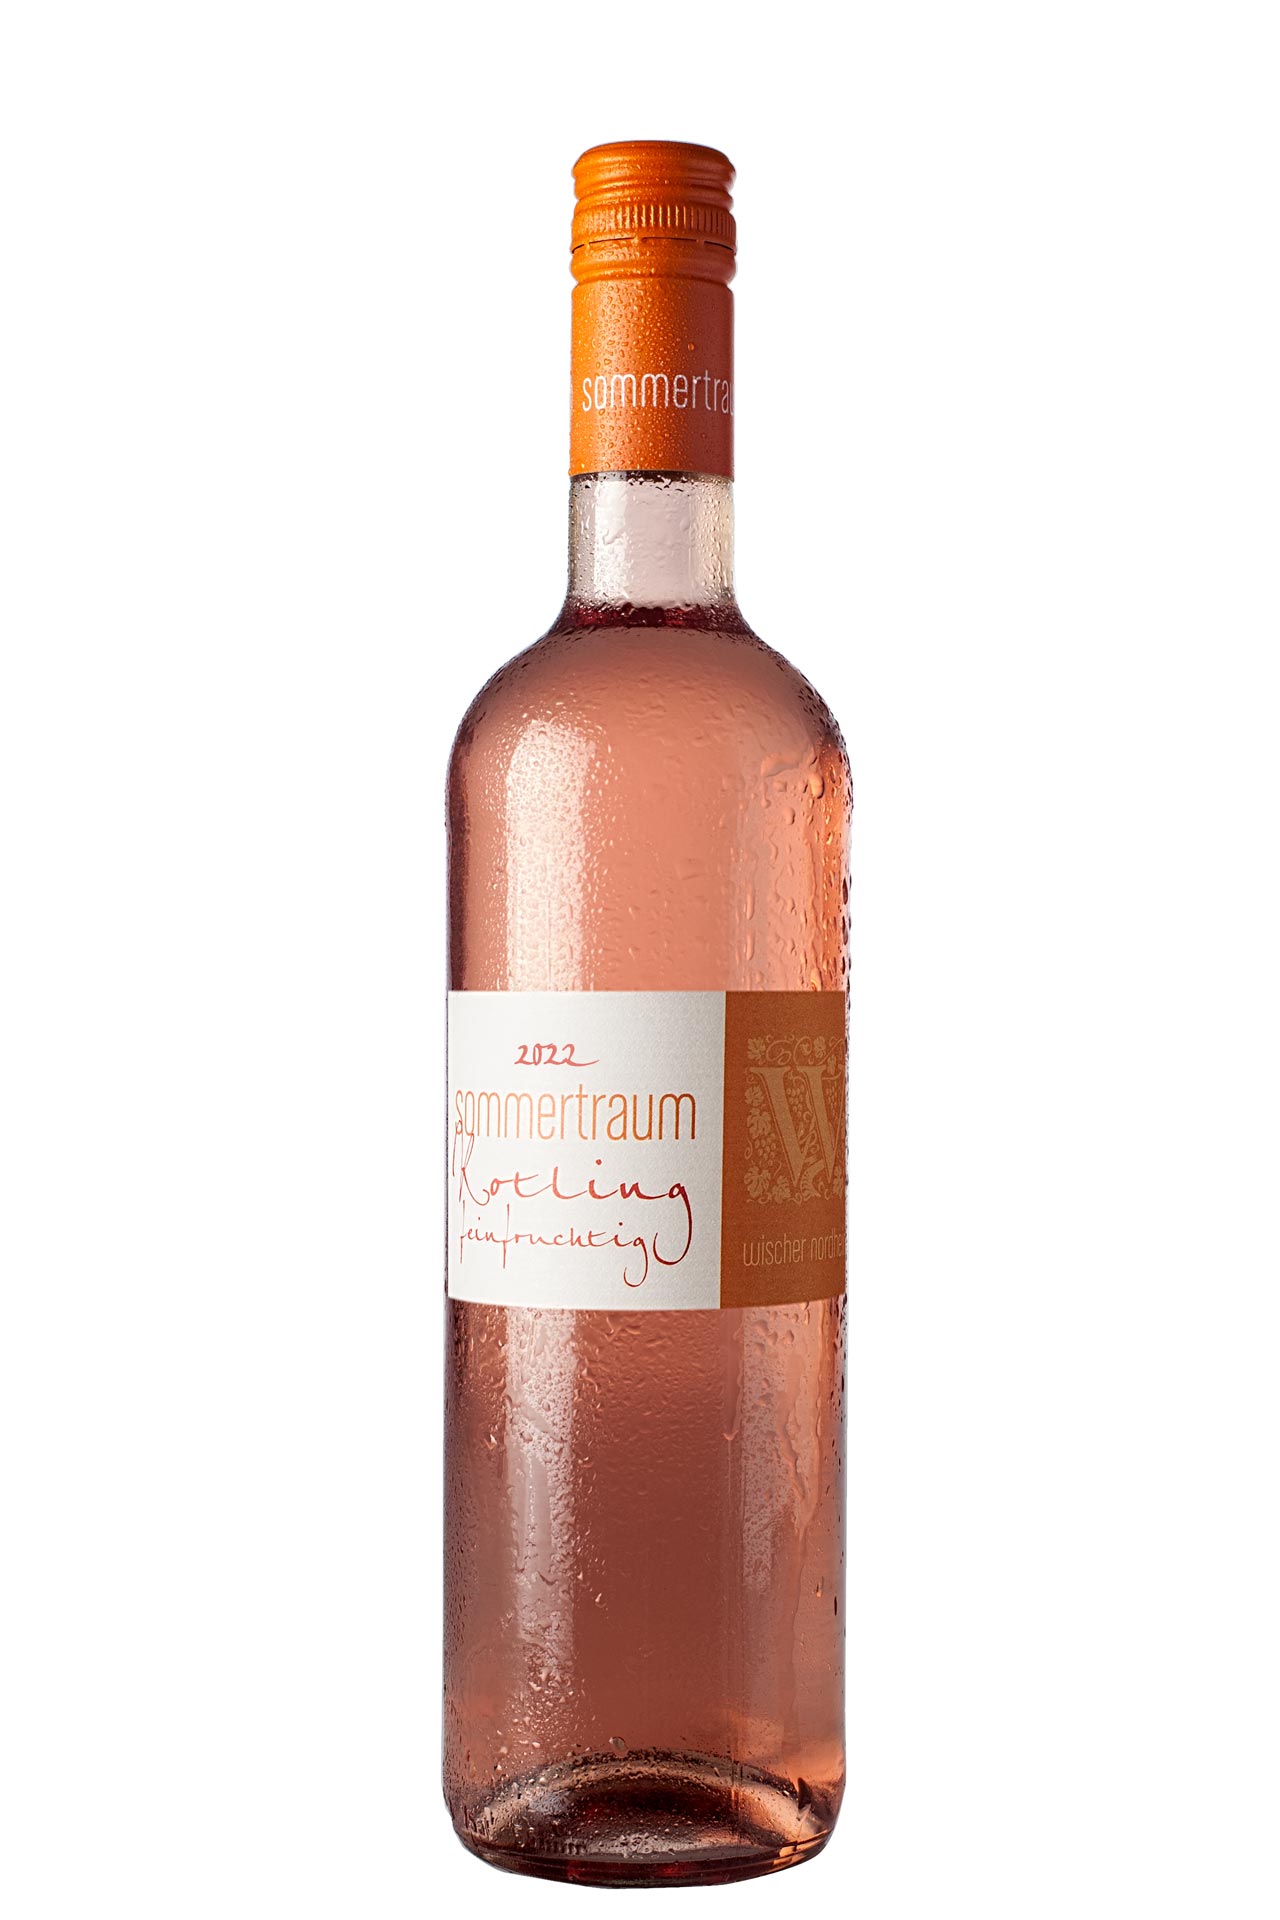 Wein-Paket "Sommertraum" gross